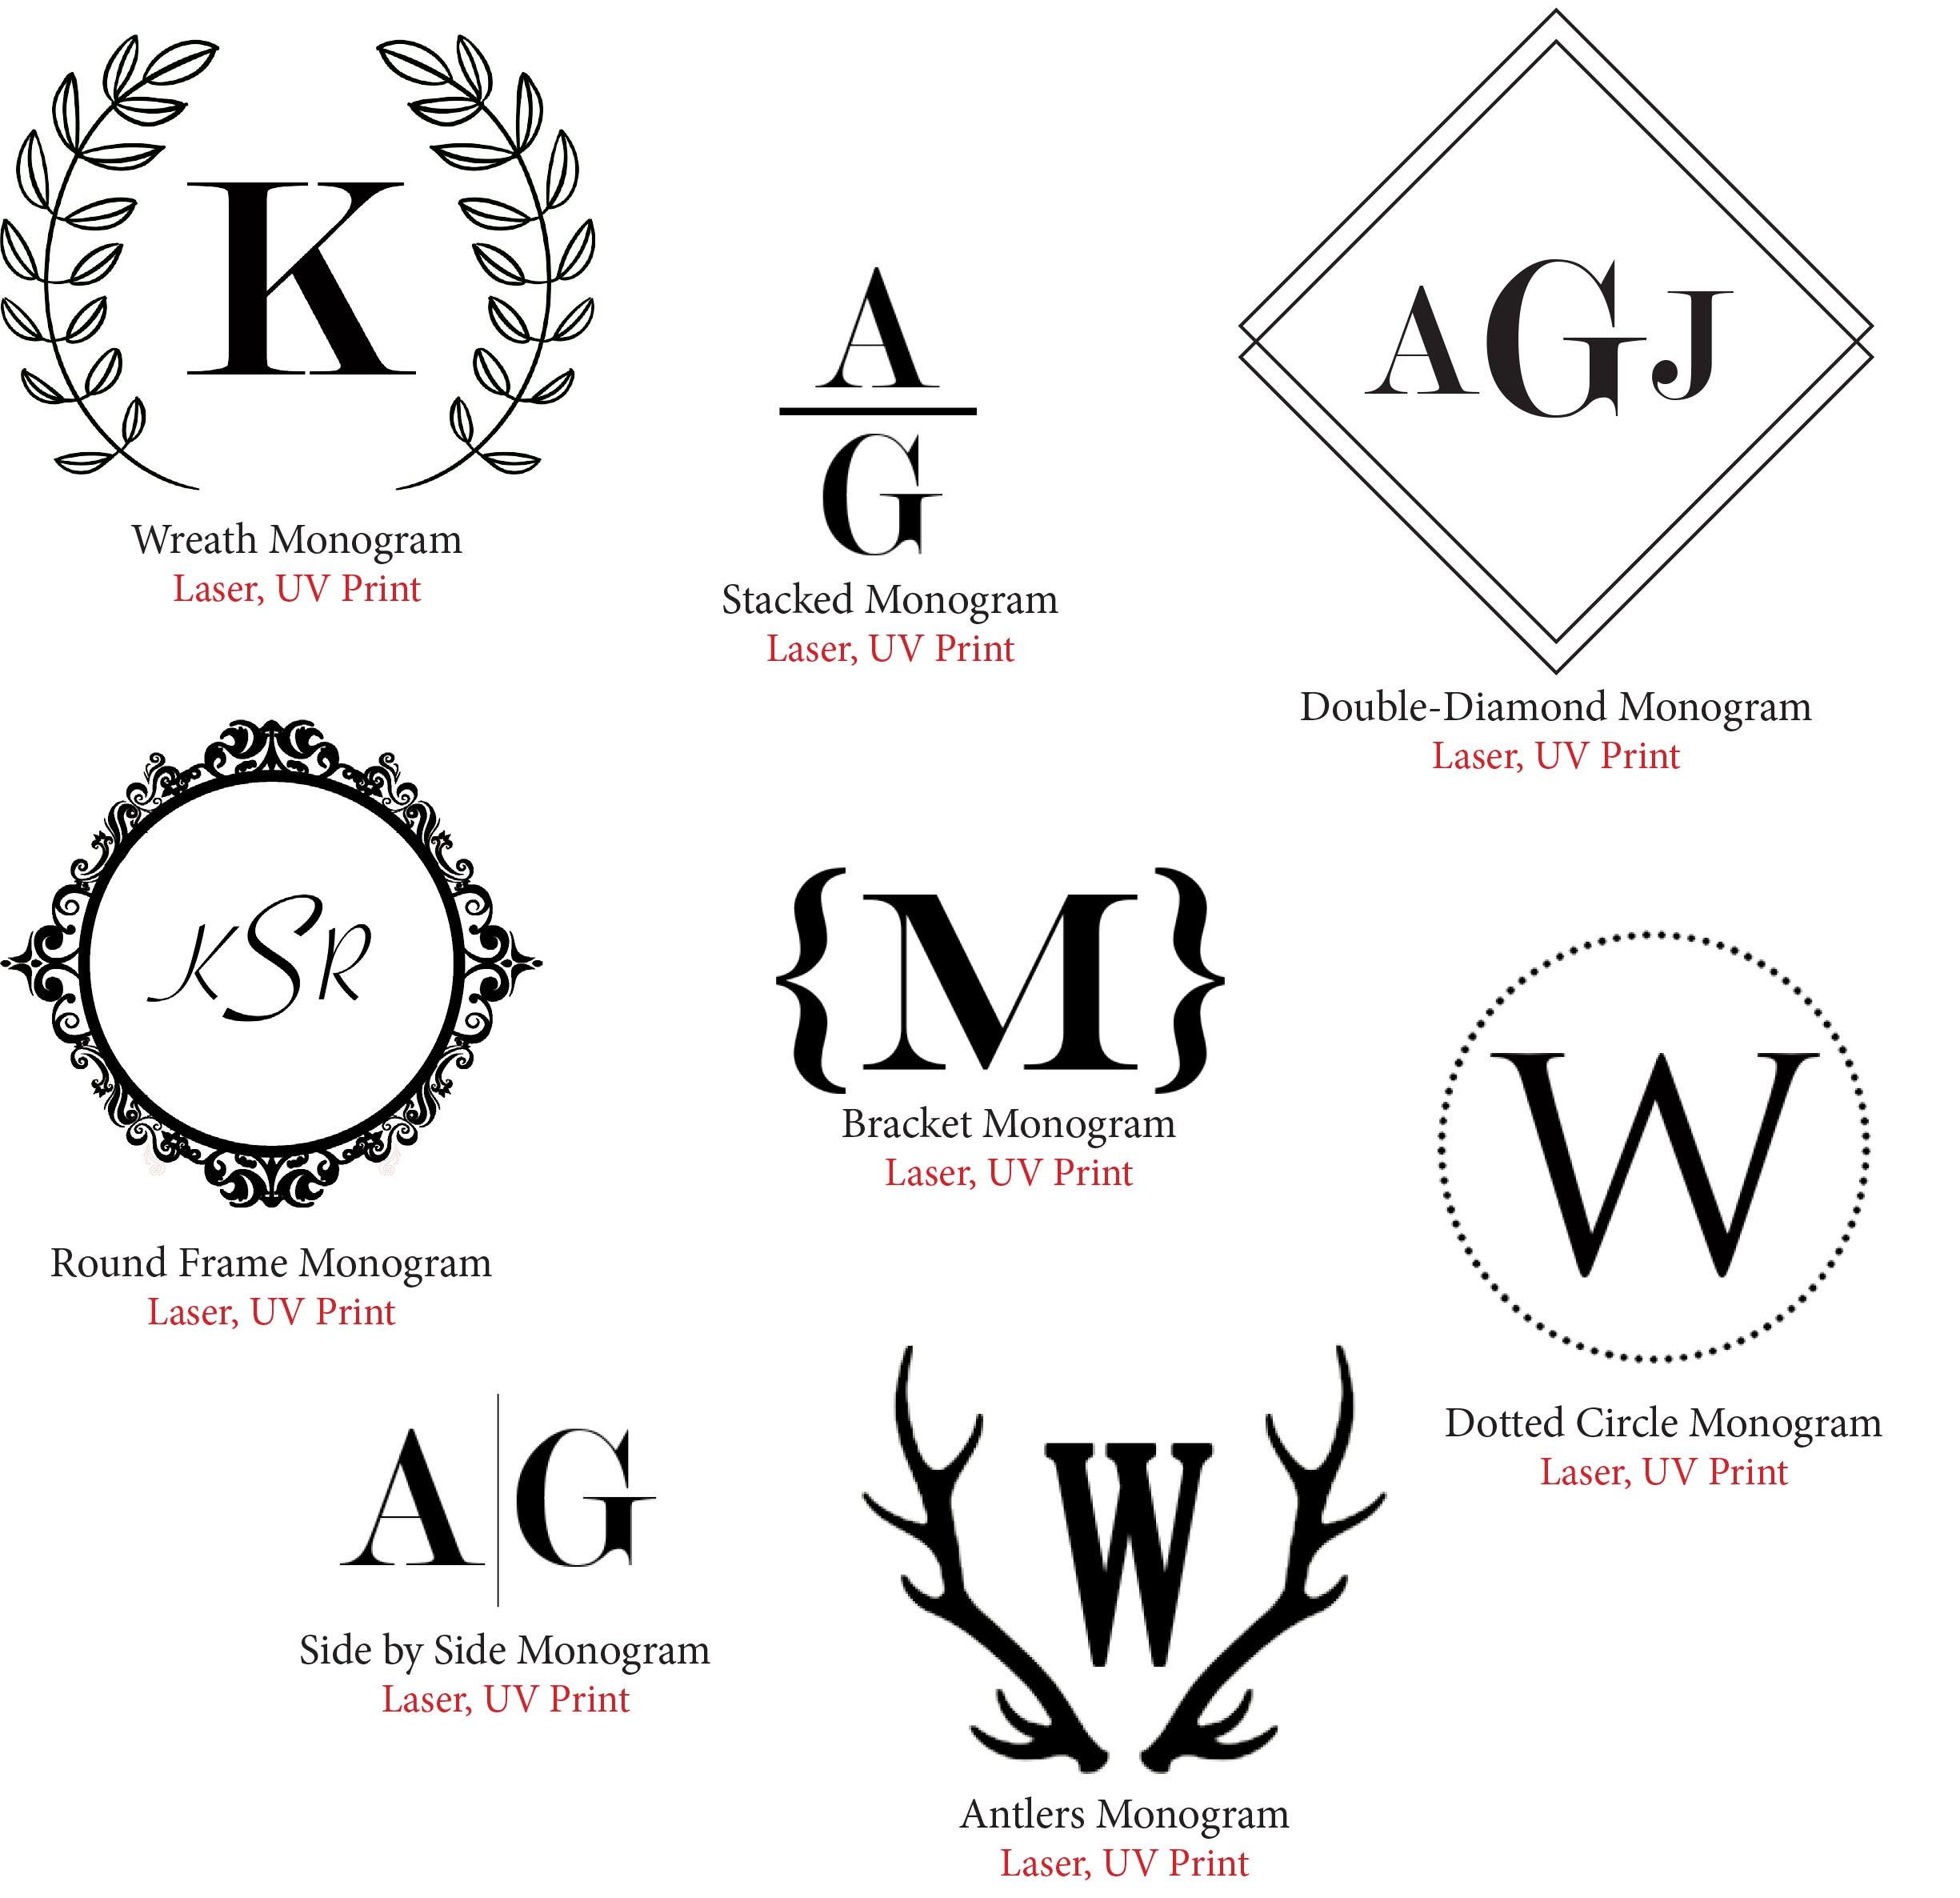 Monogram Icons